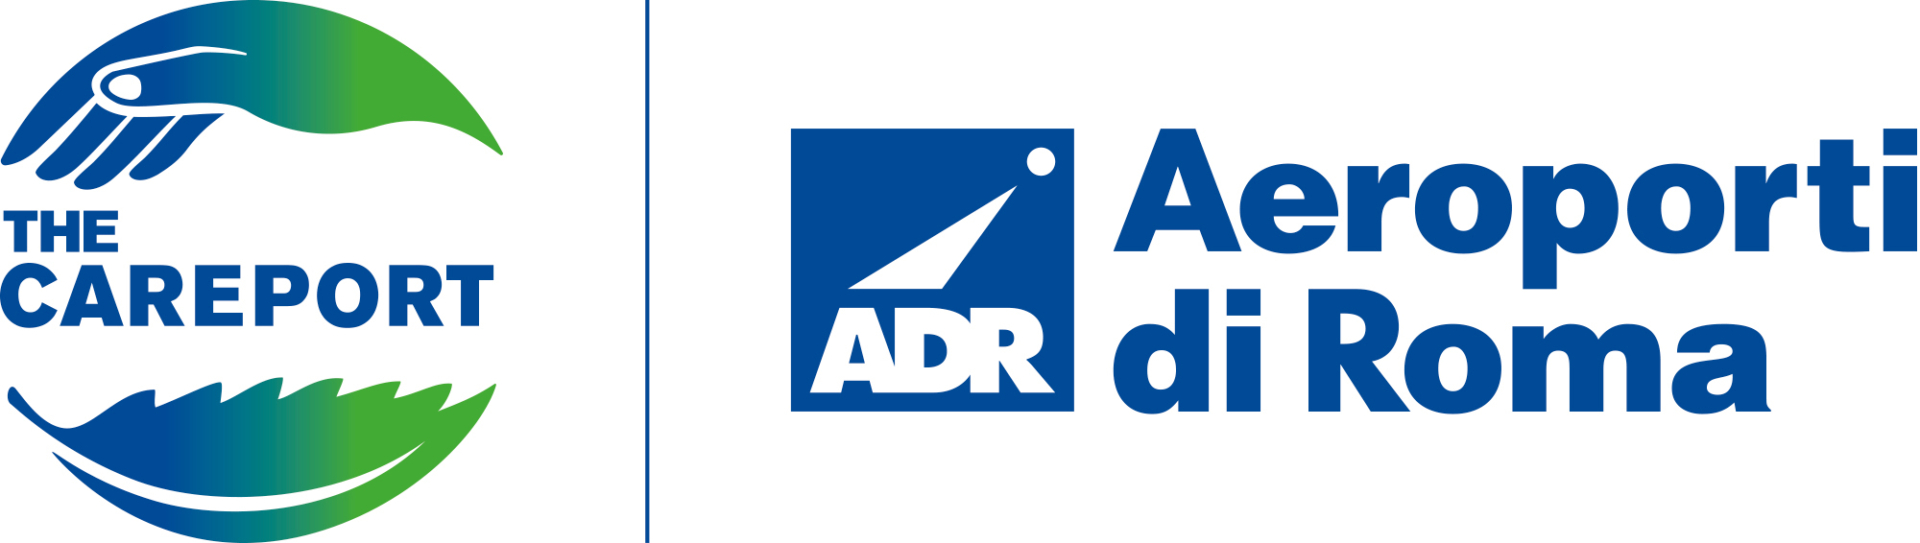 Adr logo